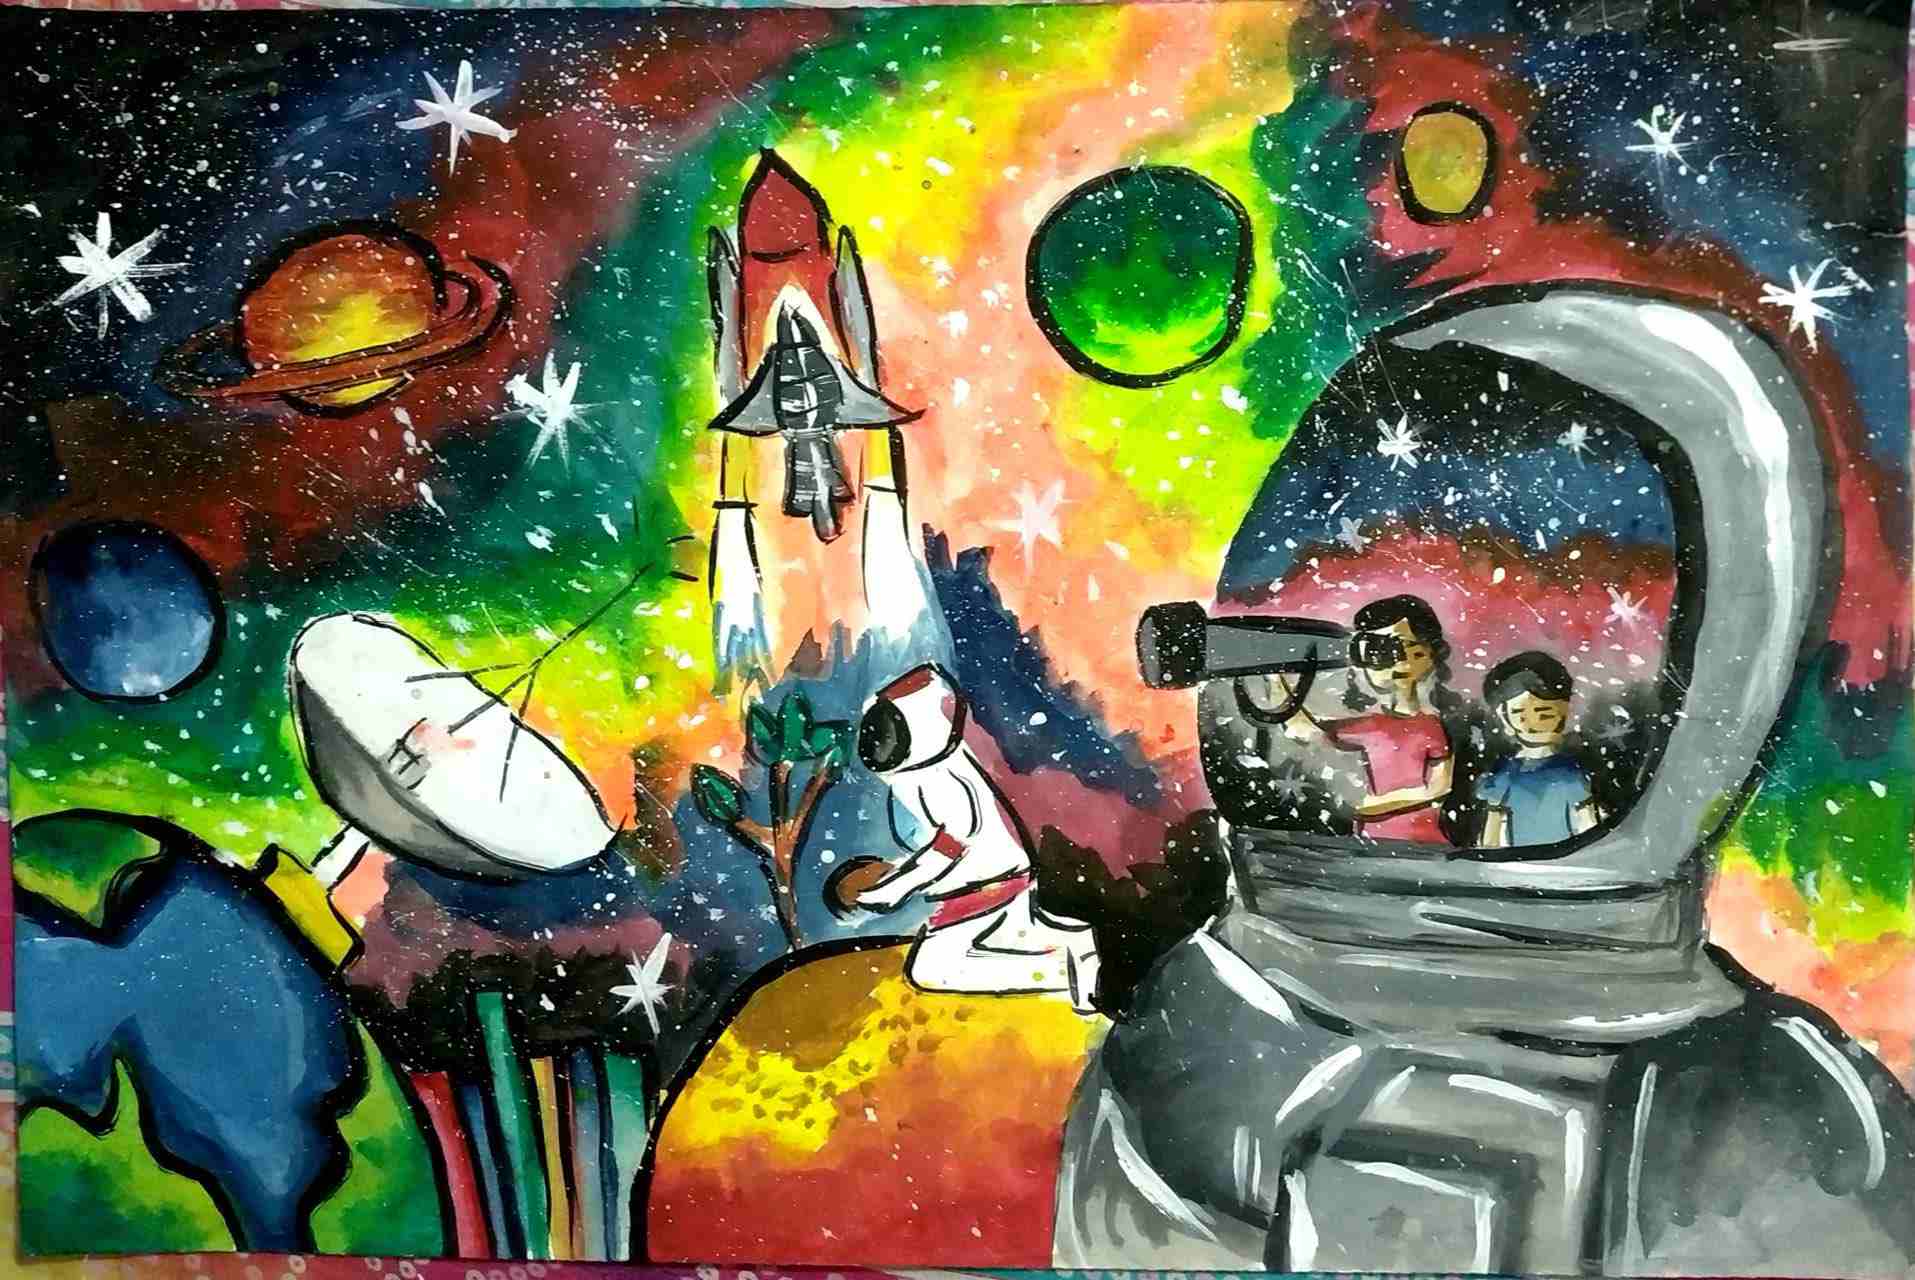 航天日绘画作品《太空车》,孟加拉国Mehzabin Kamal Maisa